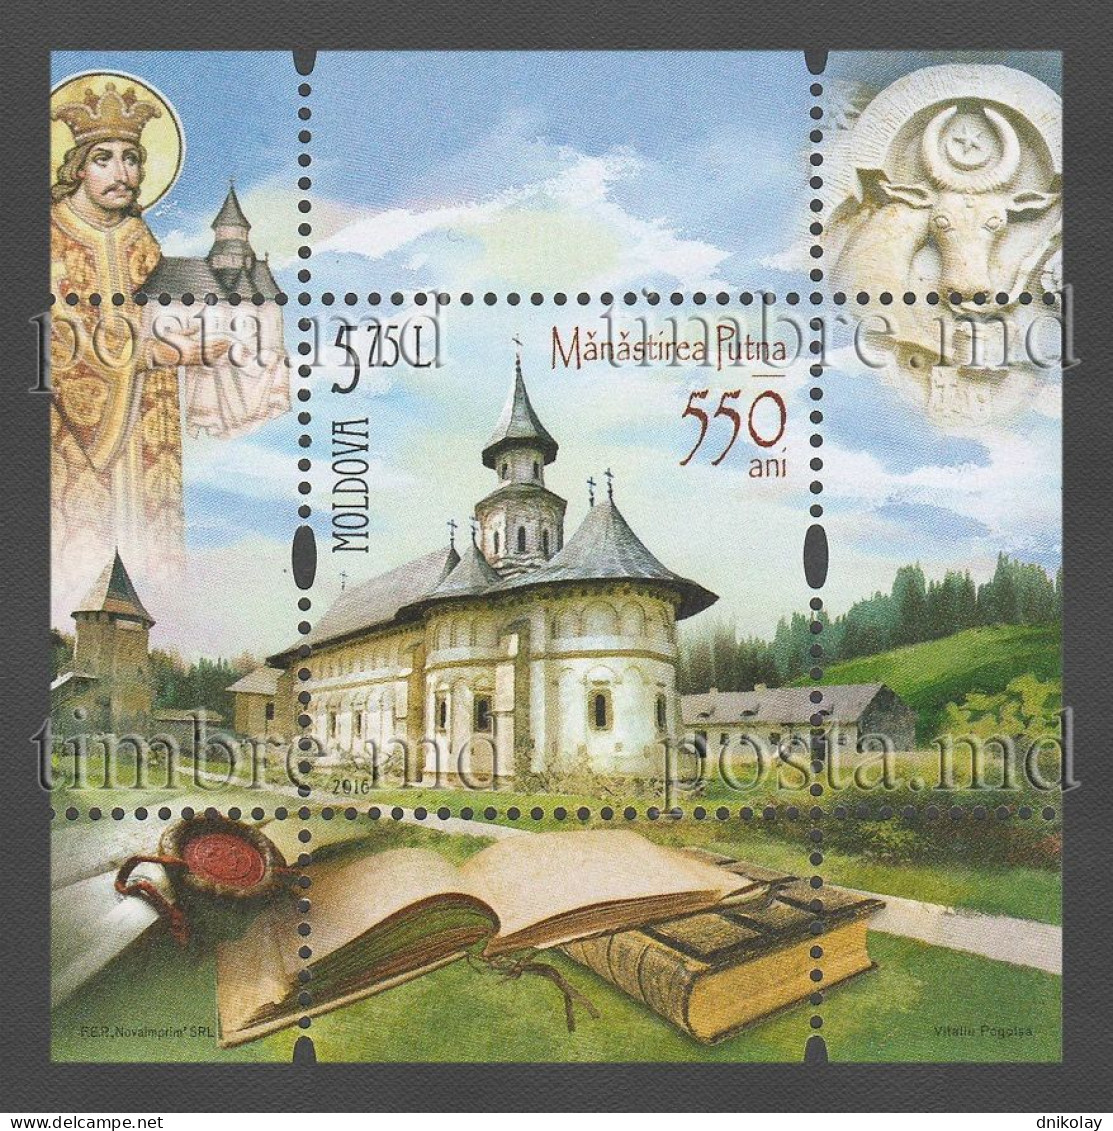 2016 973 Moldova The 550th Anniversary Of Putna Monastery MNH - Moldavia